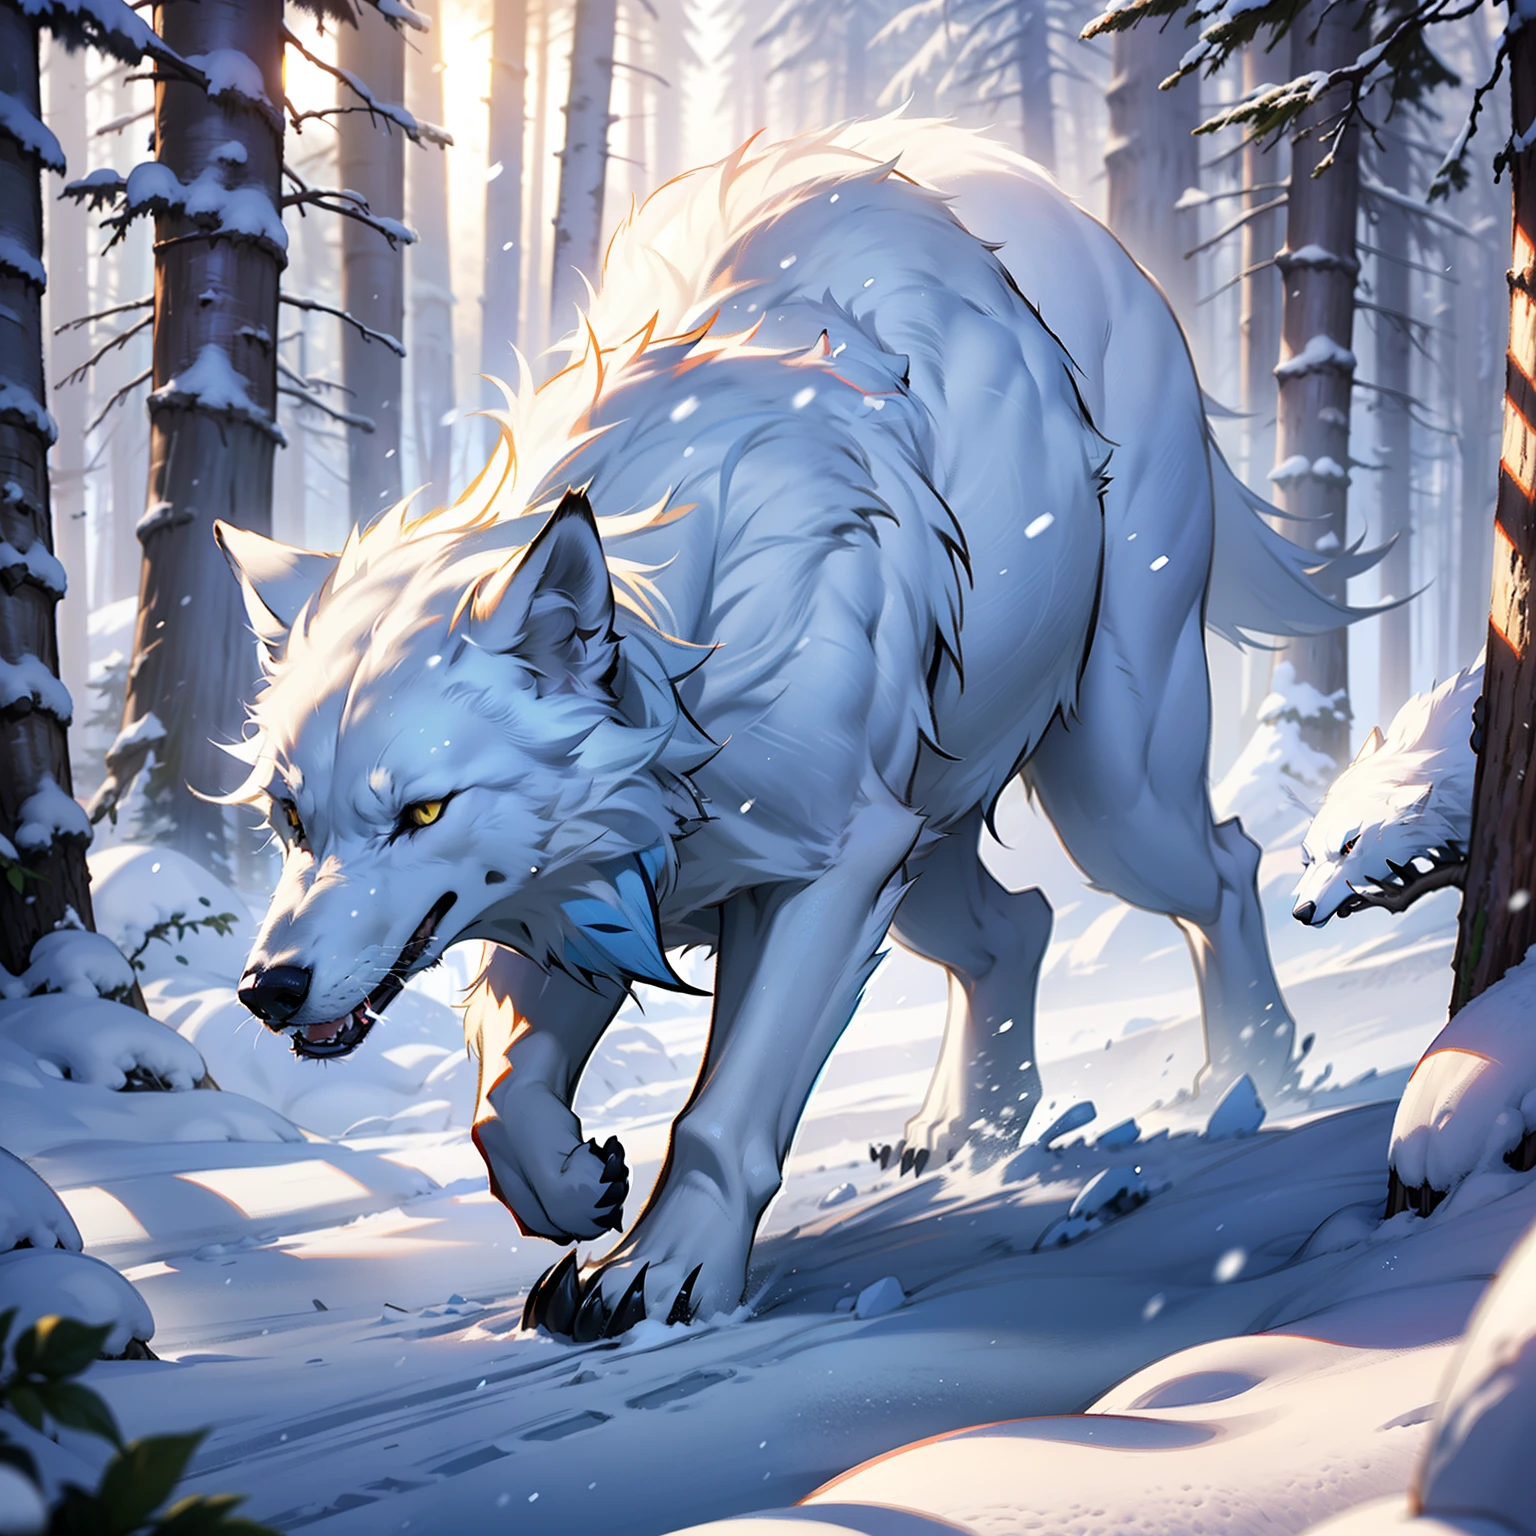 тонкий белый волк, Стройный белый волк, Изображение снежного волка в ледяном сосновом лесу, Ледяной лес, Длинный поток, Падающий снег, реалистичные изображения, Сверхвысокое разрешение, эффект, Детали повсюду